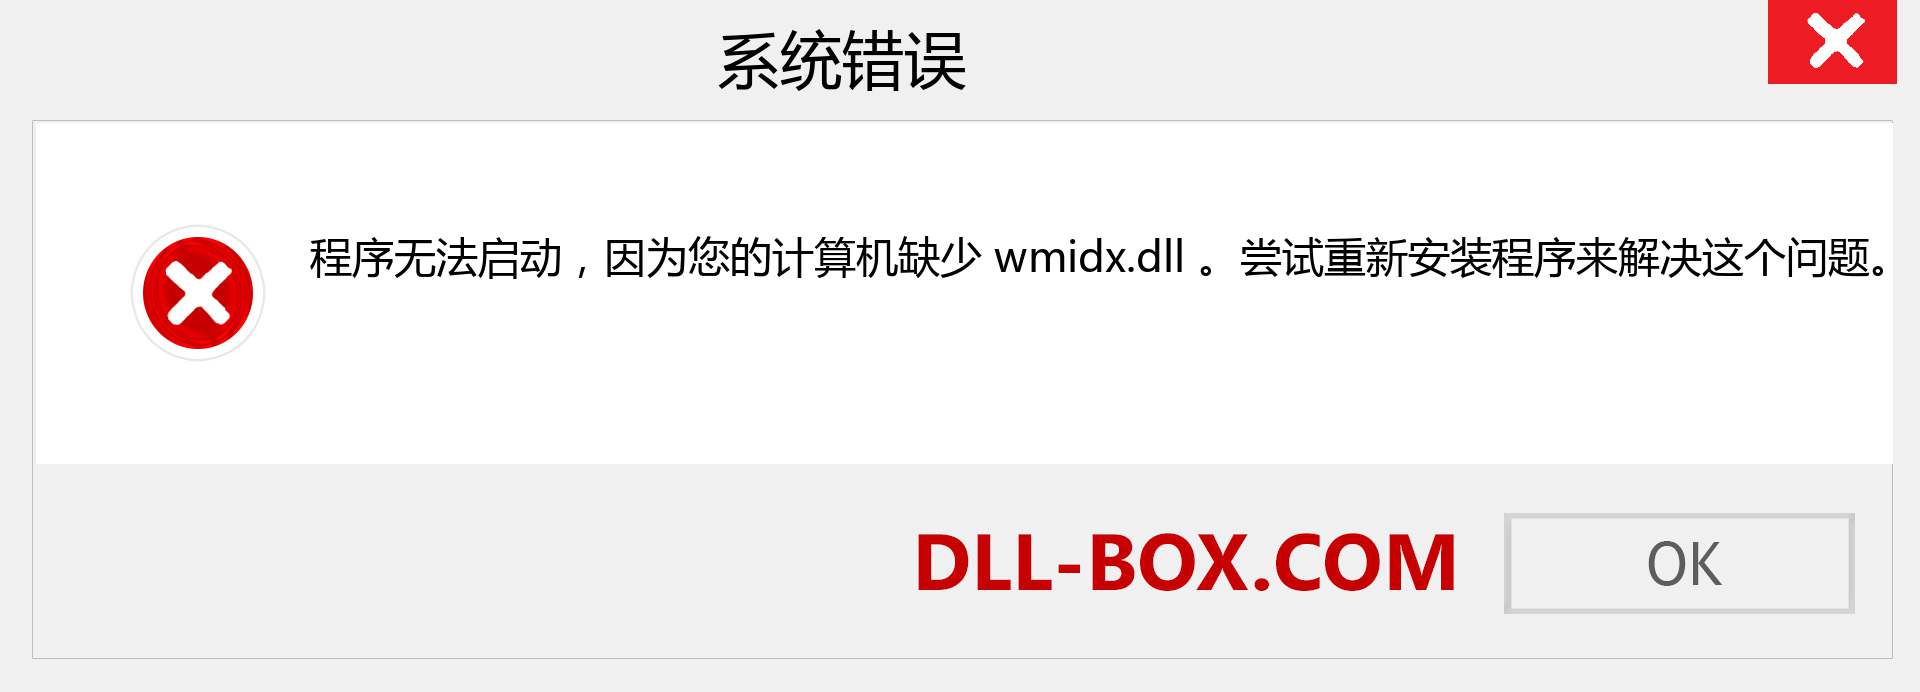 wmidx.dll 文件丢失？。 适用于 Windows 7、8、10 的下载 - 修复 Windows、照片、图像上的 wmidx dll 丢失错误